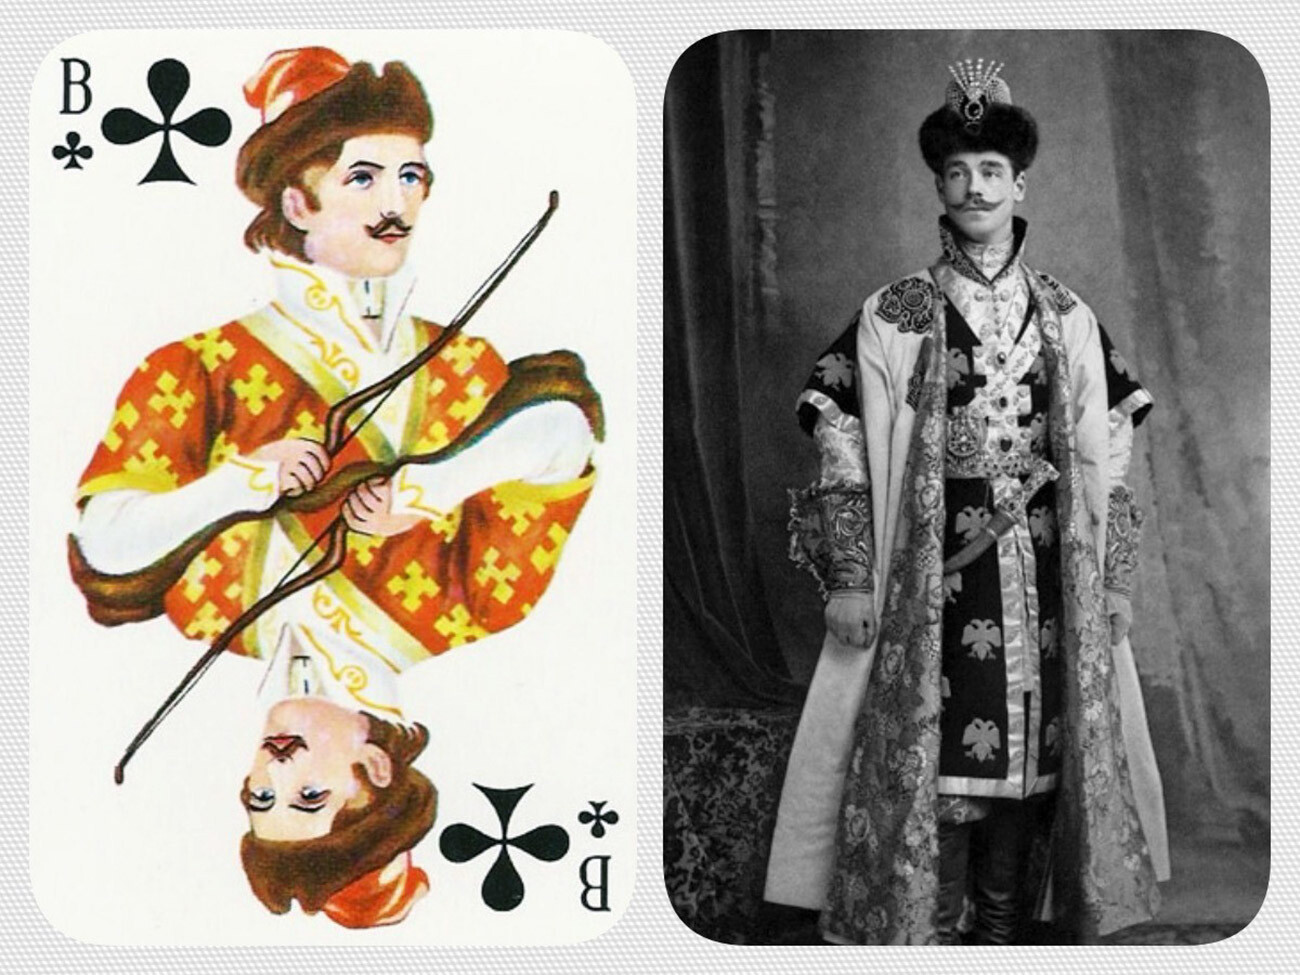 La imagen de Miguel en un baile de disfraces en 1903 sirvió de prototipo para la sota de bastos de las famosas cartas al estilo ruso.